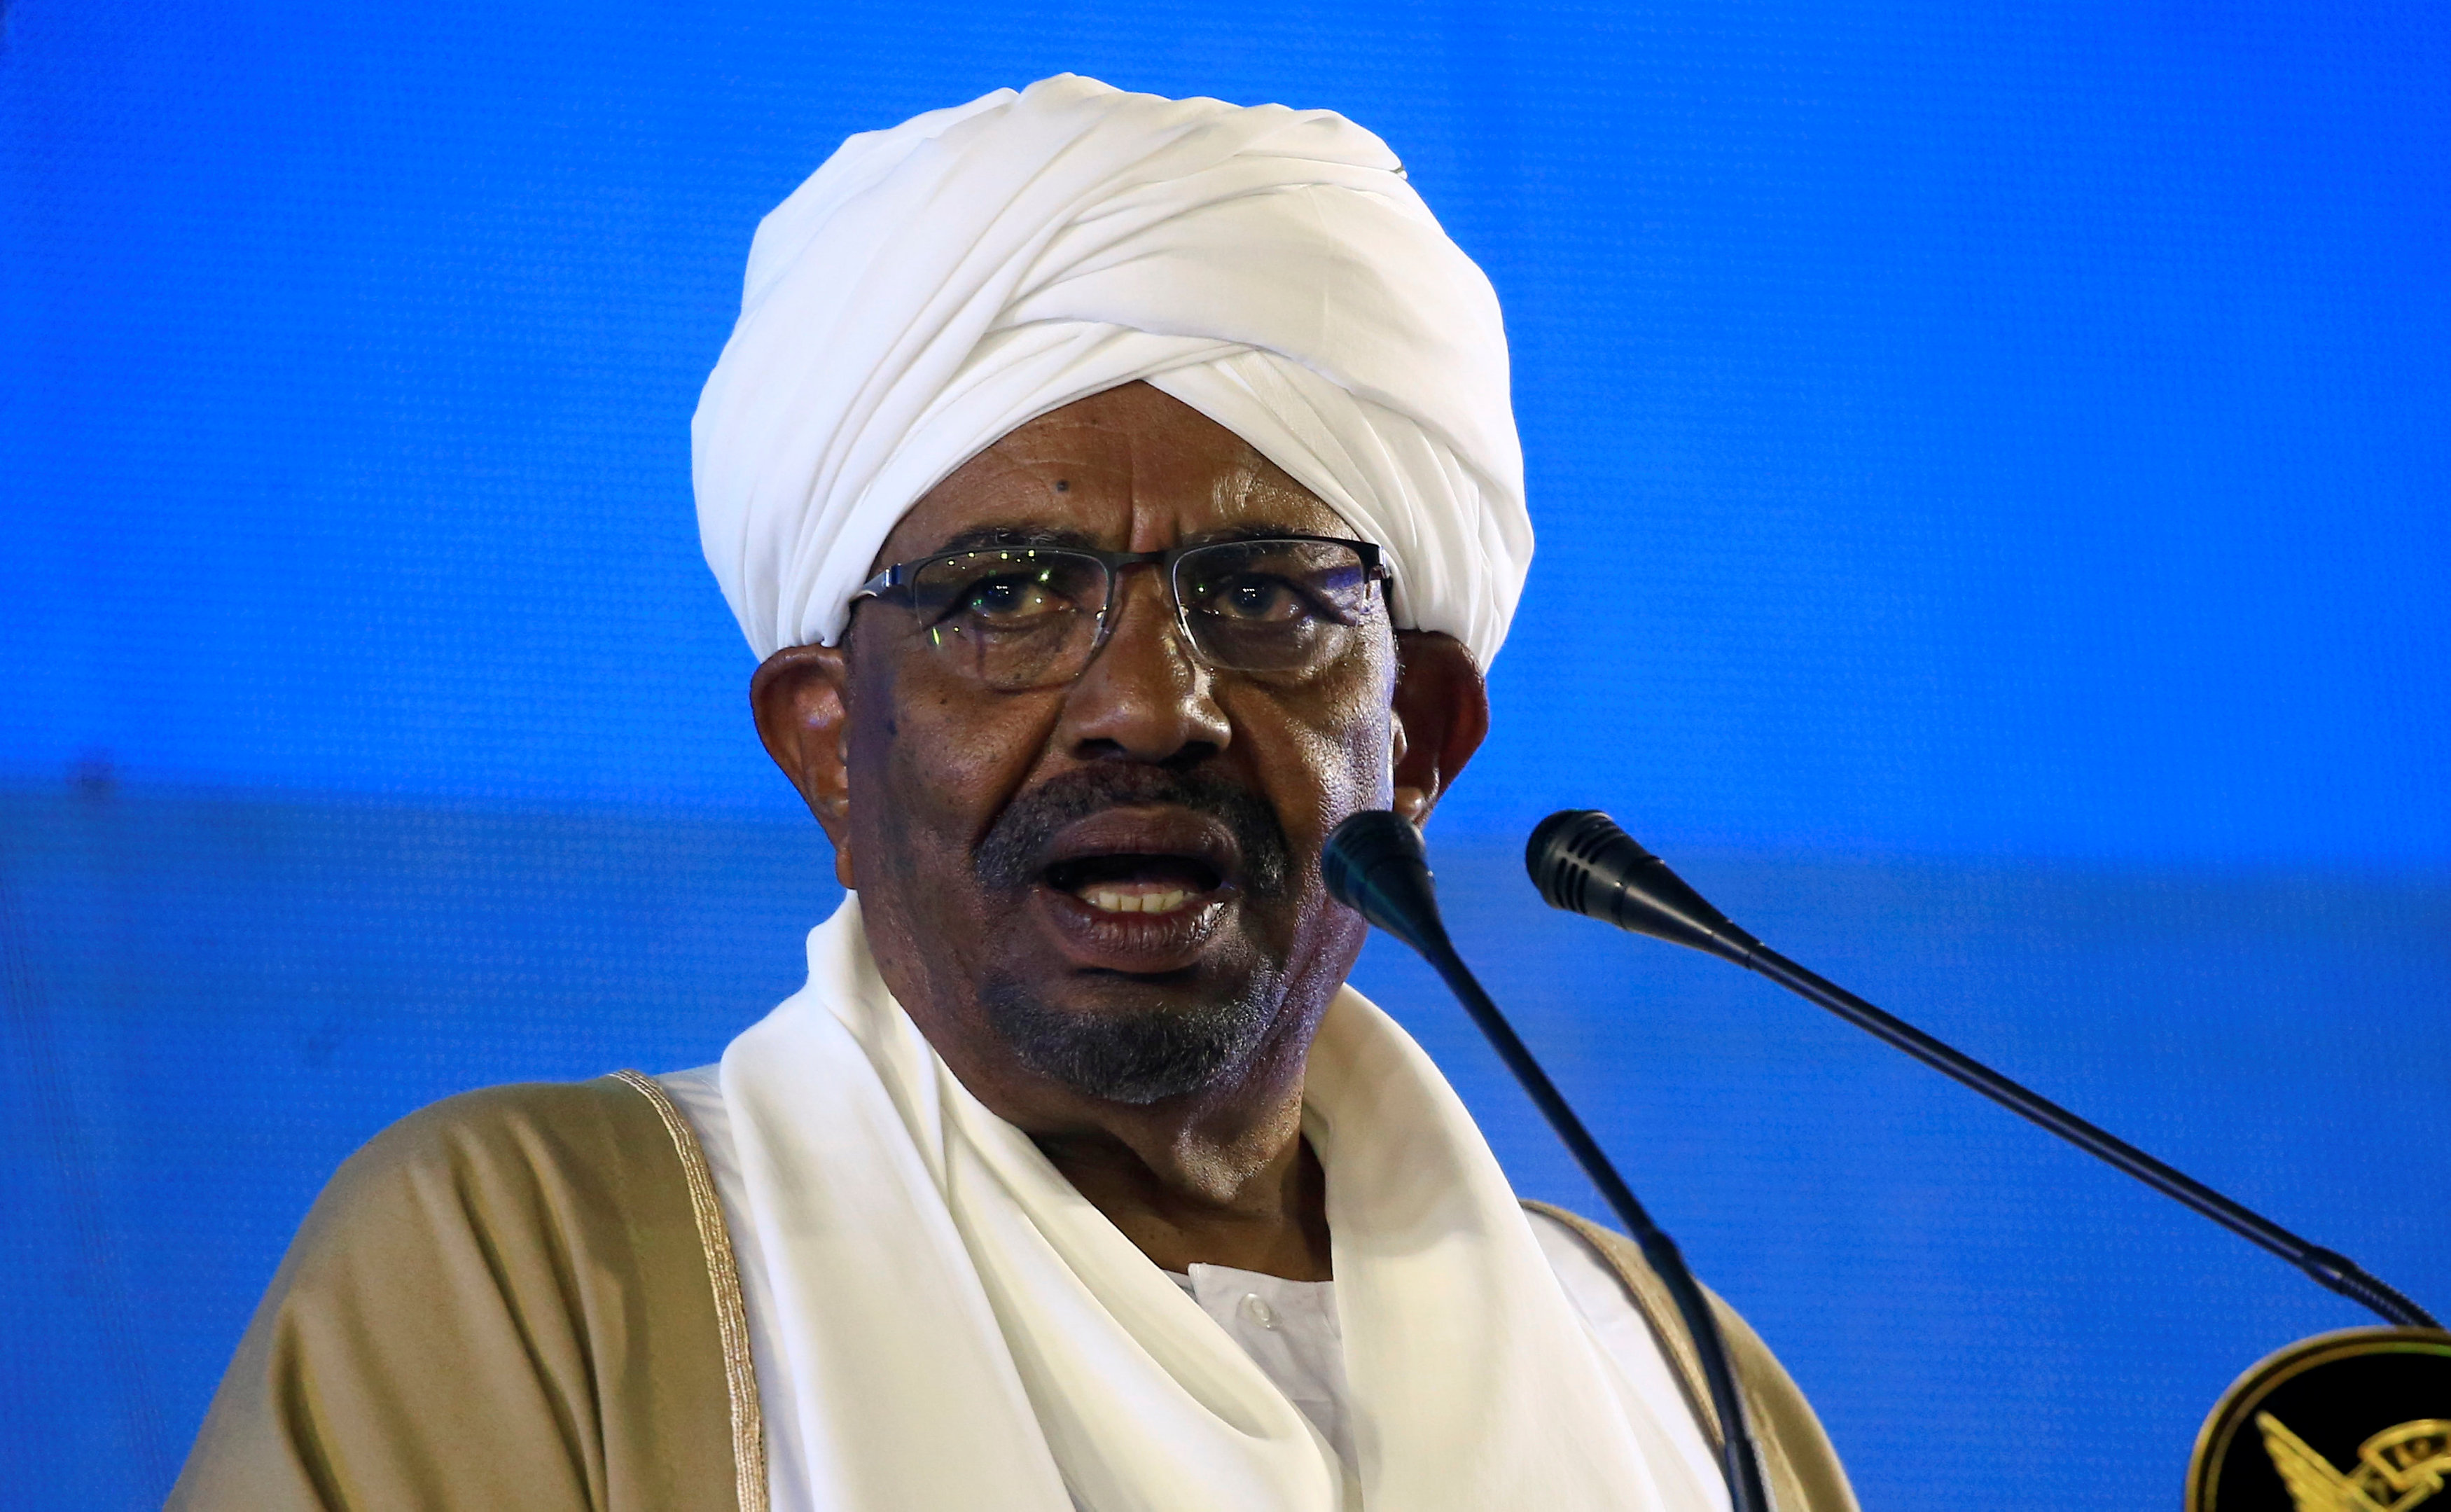 الرئيس السوداني يعين 3 وزراء اتحاديين و4 وزراء دولة 